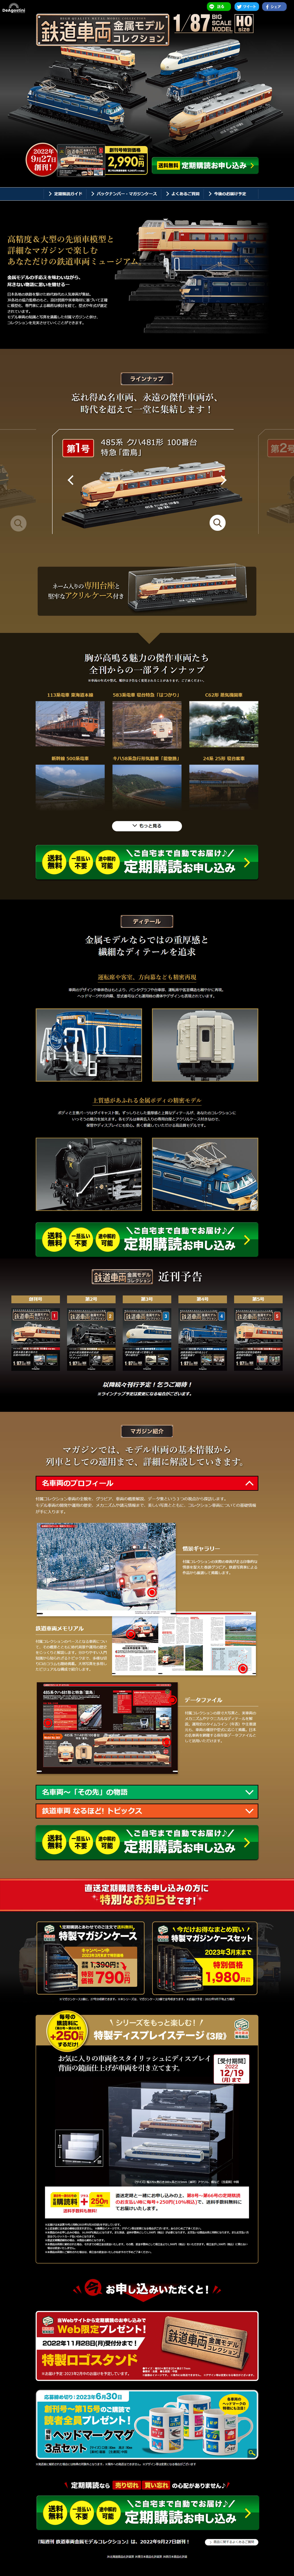 隔週刊 鉄道車両 金属モデルコレクション_pc_1